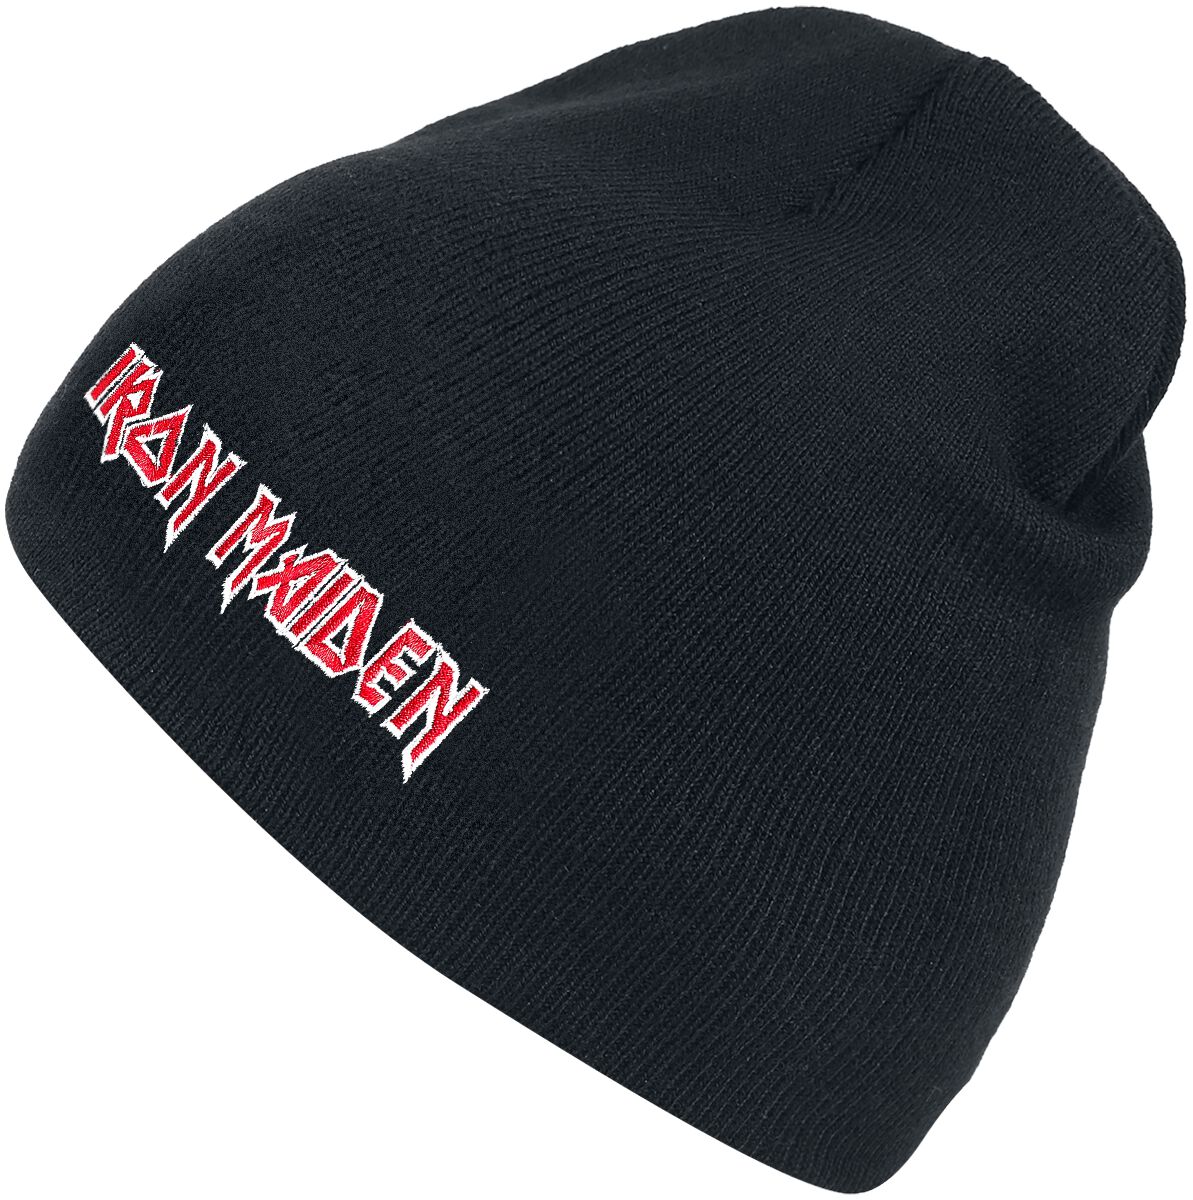 Iron Maiden - Logo - Mütze - schwarz